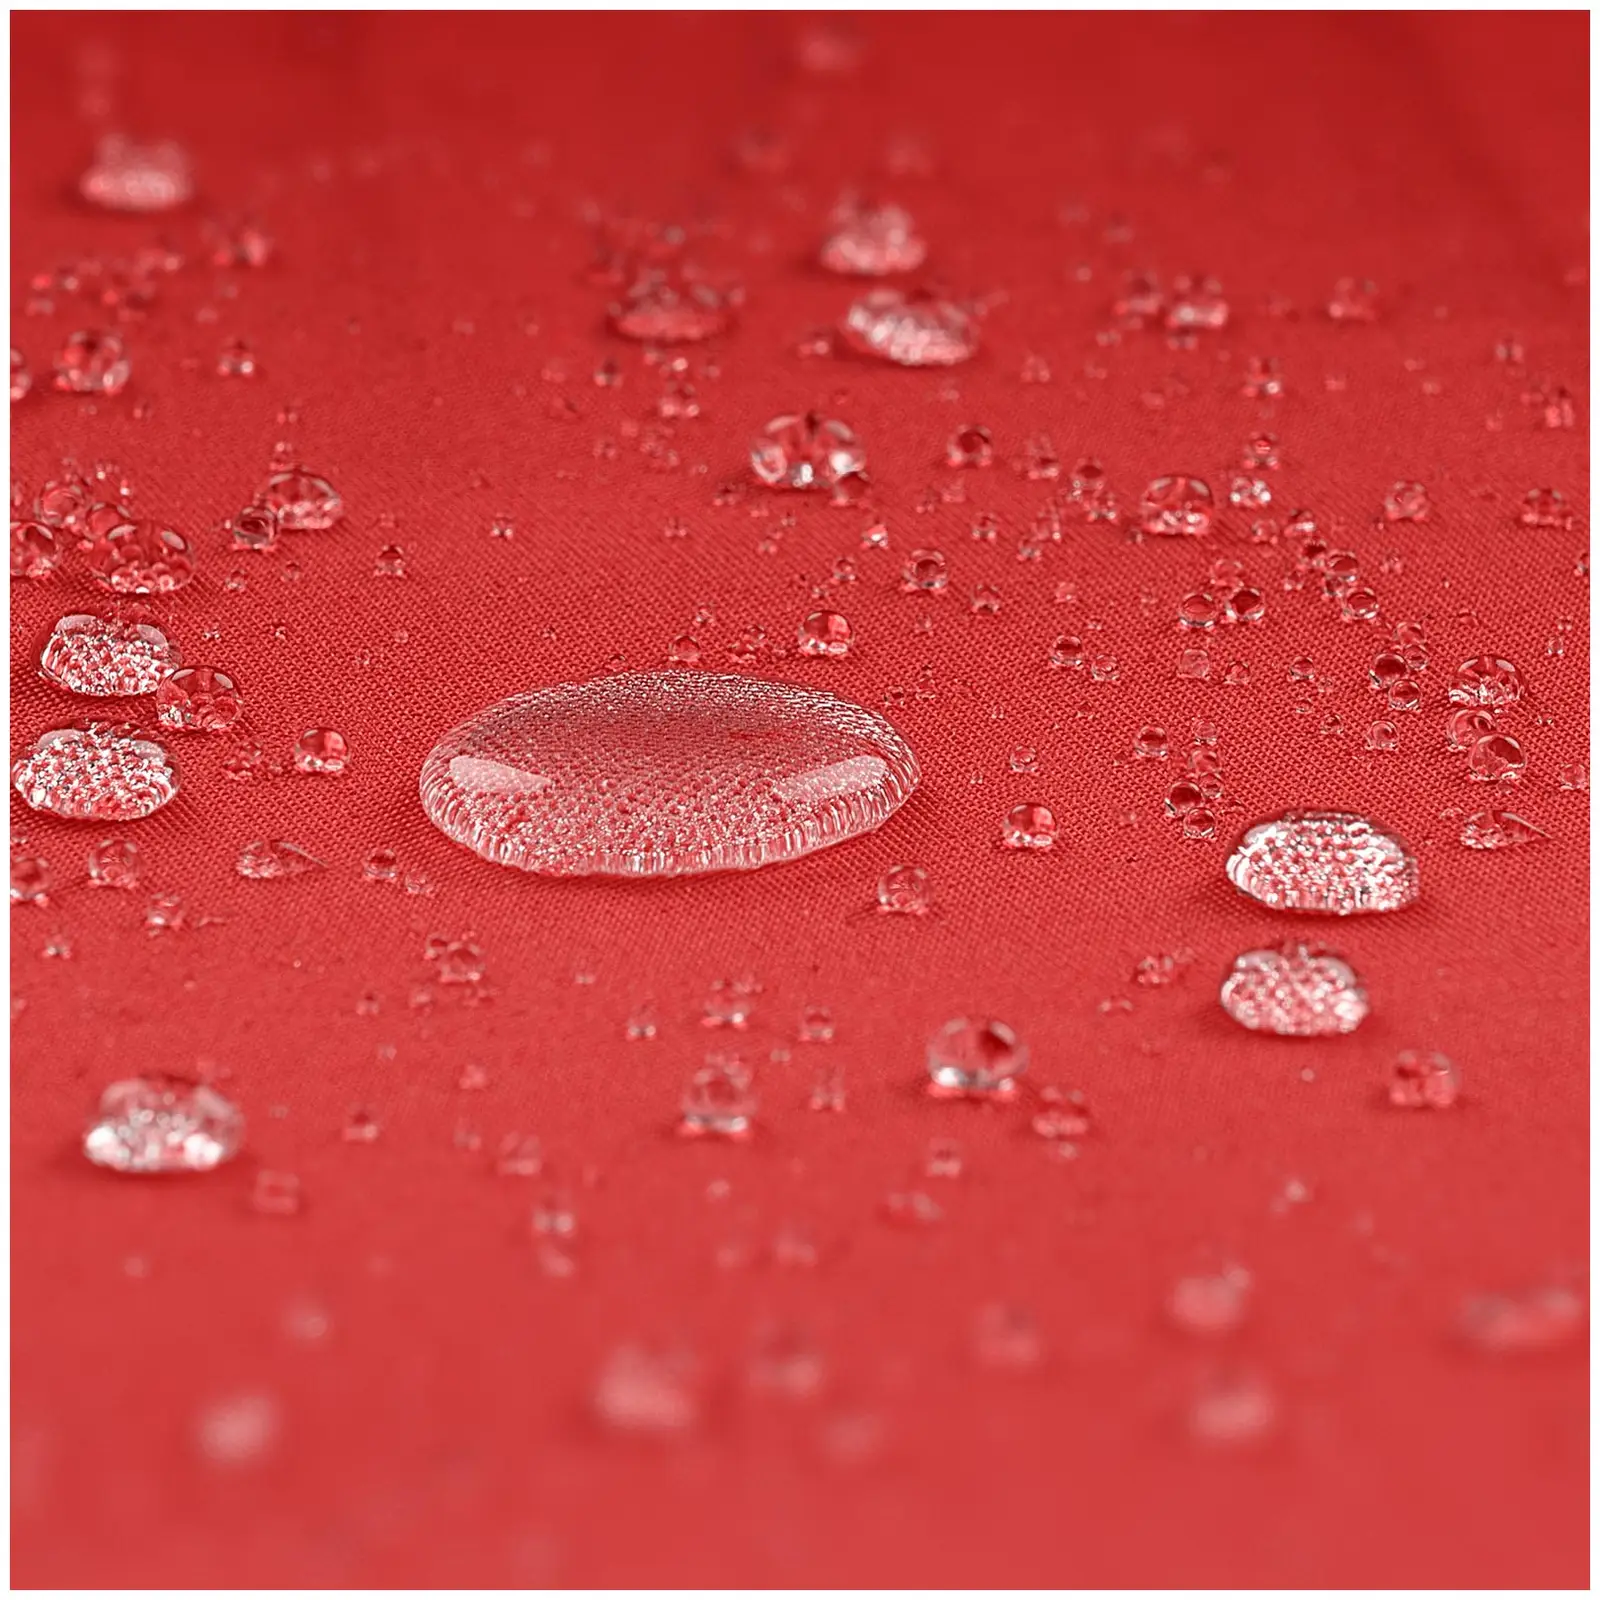 Seconda Mano Ombrellone decentrato - rosso - quadrato - Ø 250 cm - girevole